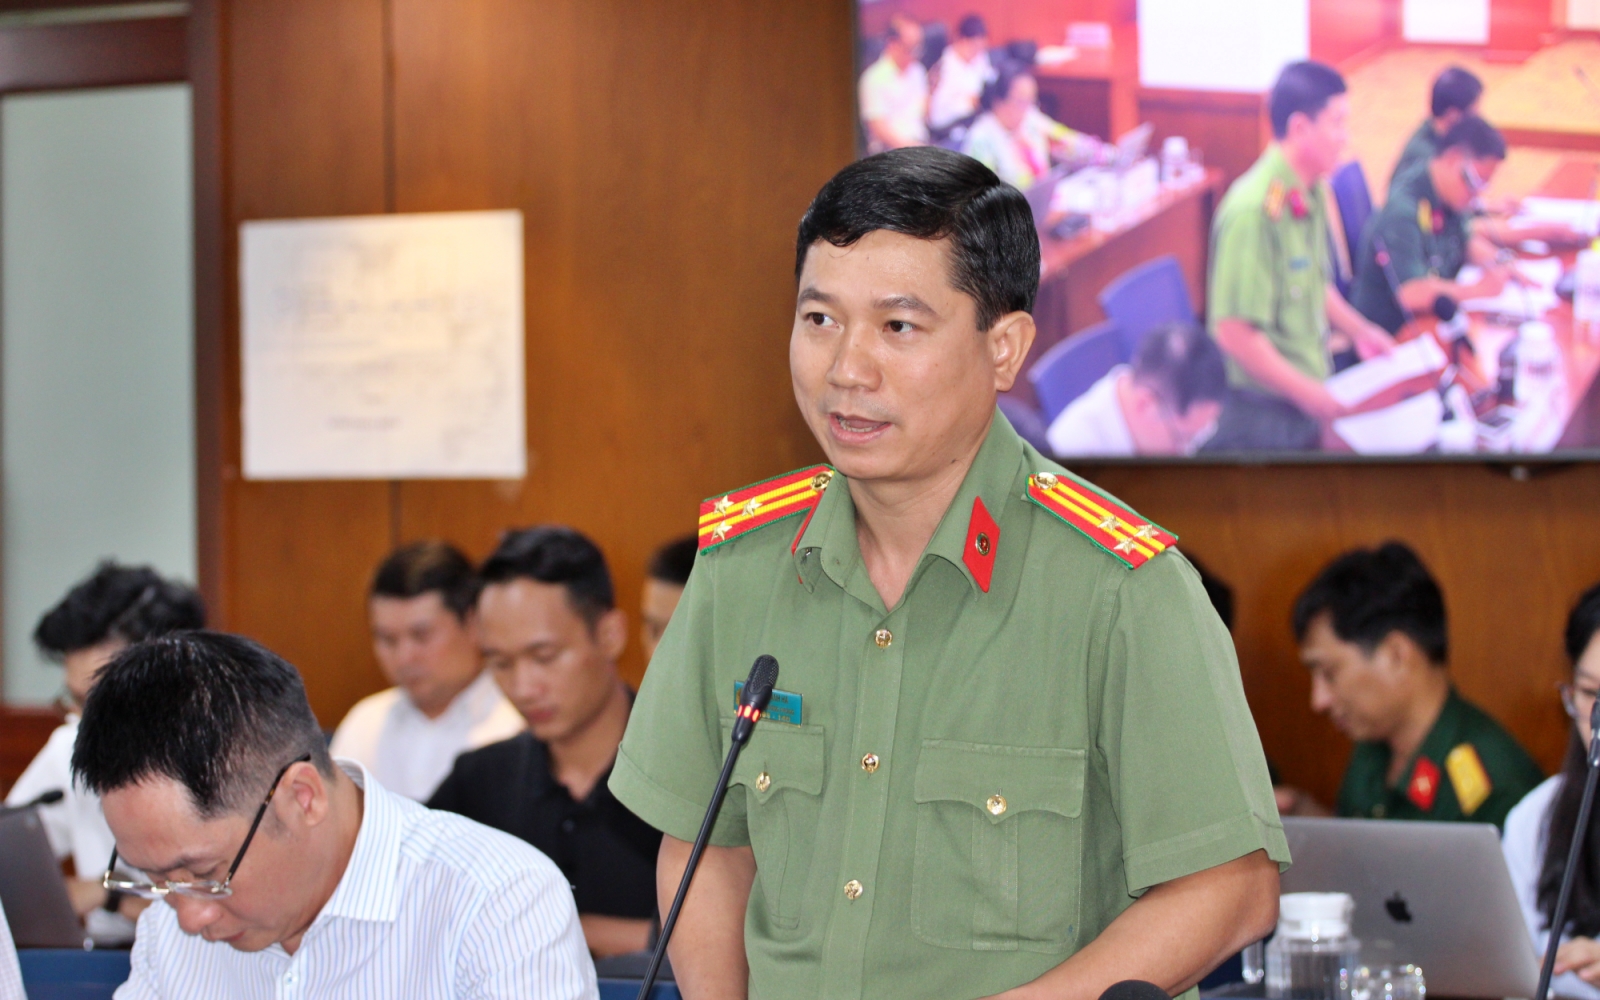 An ninh - Hình sự - Thành phố Hồ Chí Minh xảy ra 18 vụ tai nạn giao thông dịp Tết